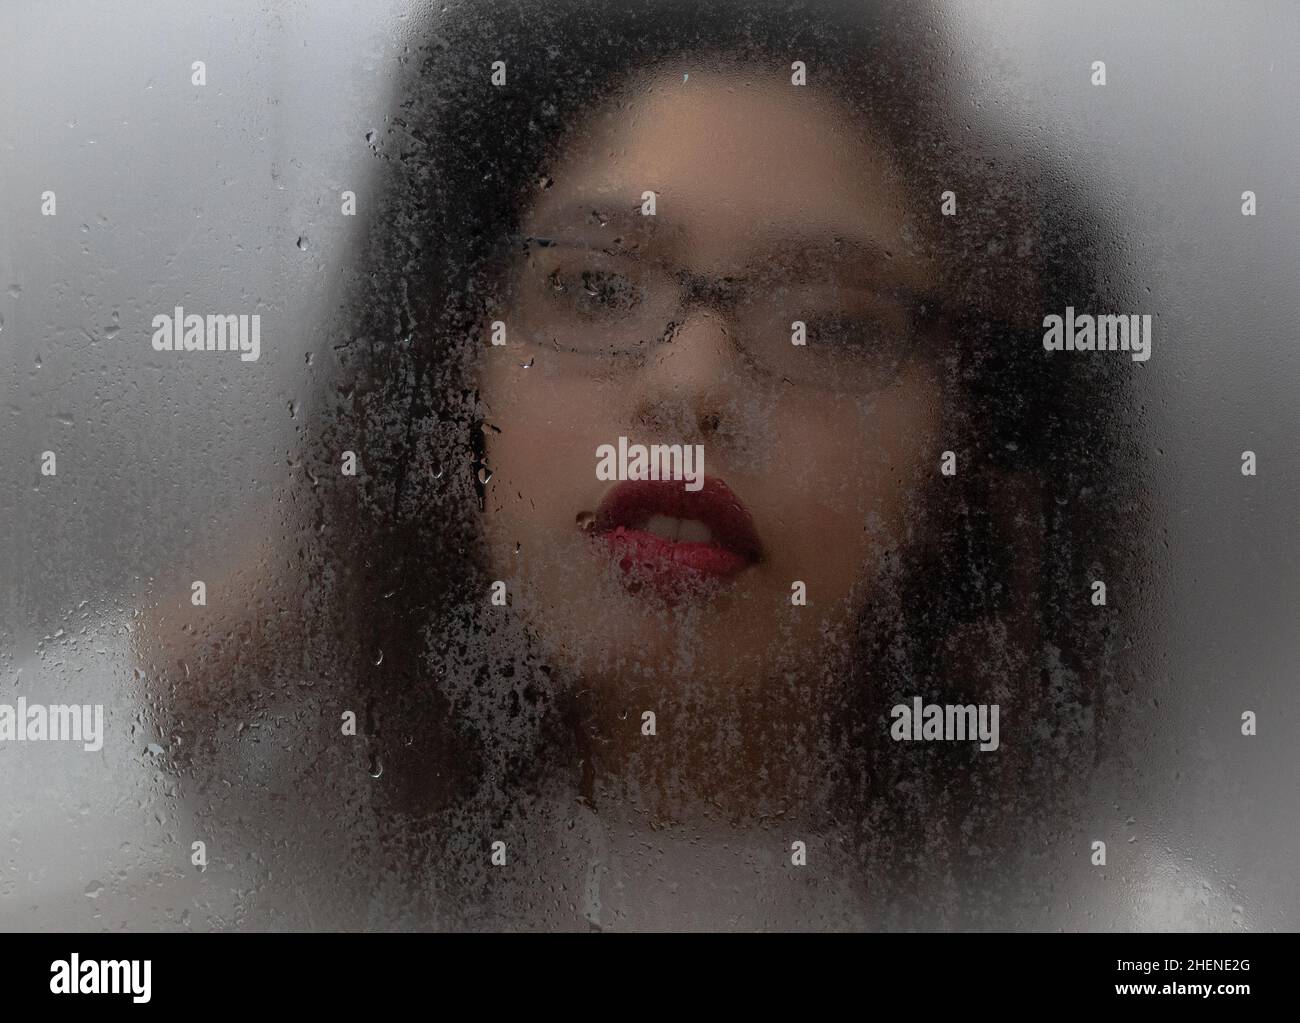 Nahaufnahme einer Frau hinter einem nassen Glas, Fokus auf ihre roten Lippen Stockfoto